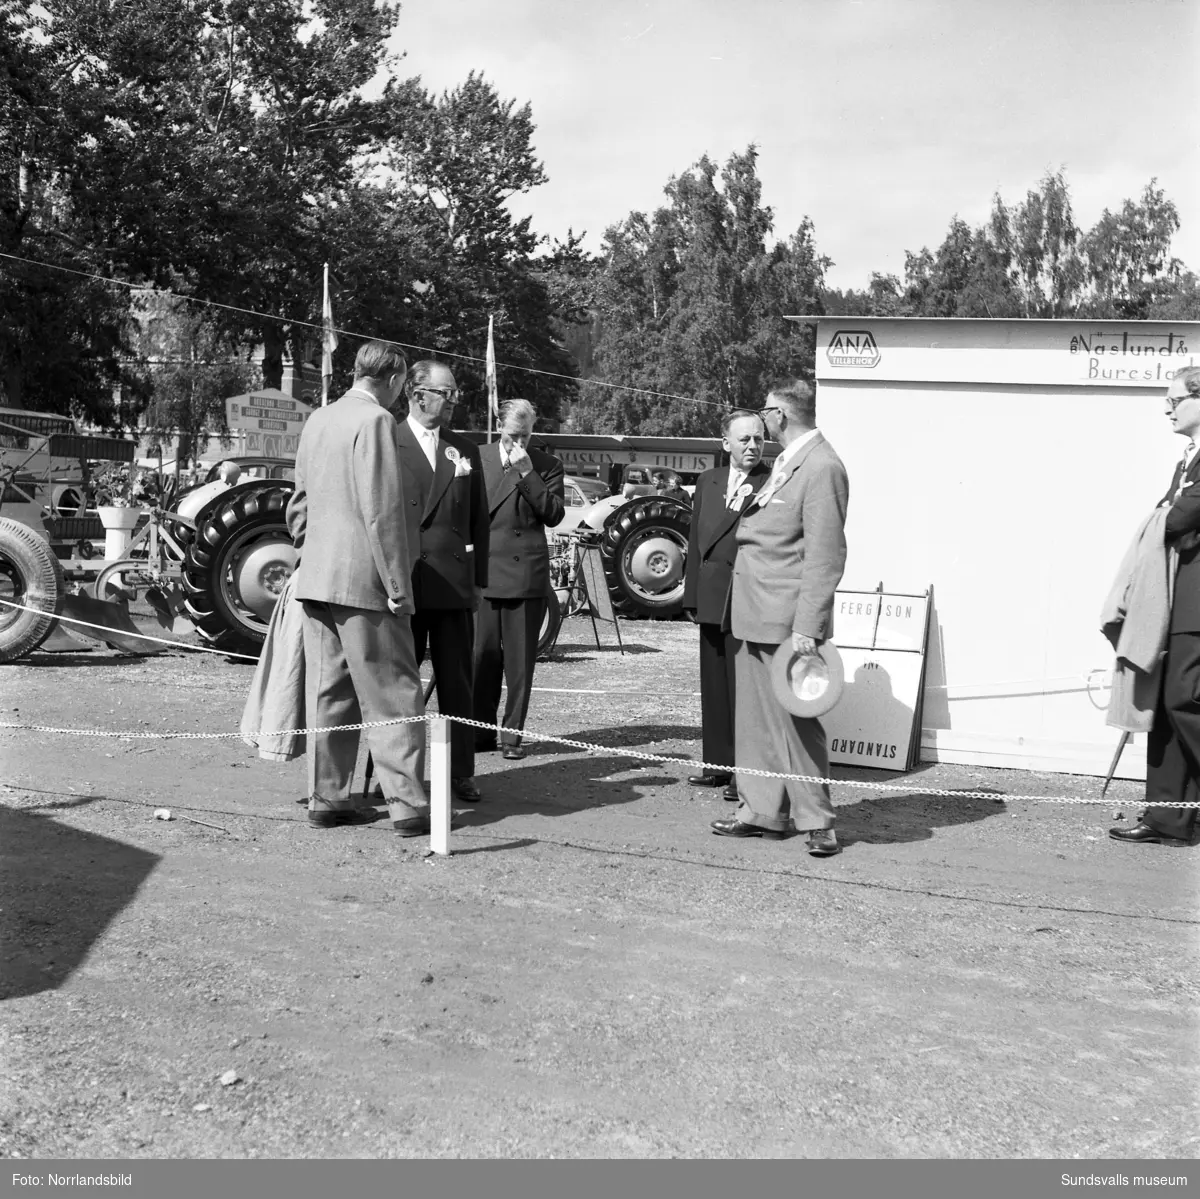 Näslund & Burestad, bilfirma med utställningsmonter vid läroverket. Personbilar och traktorer.